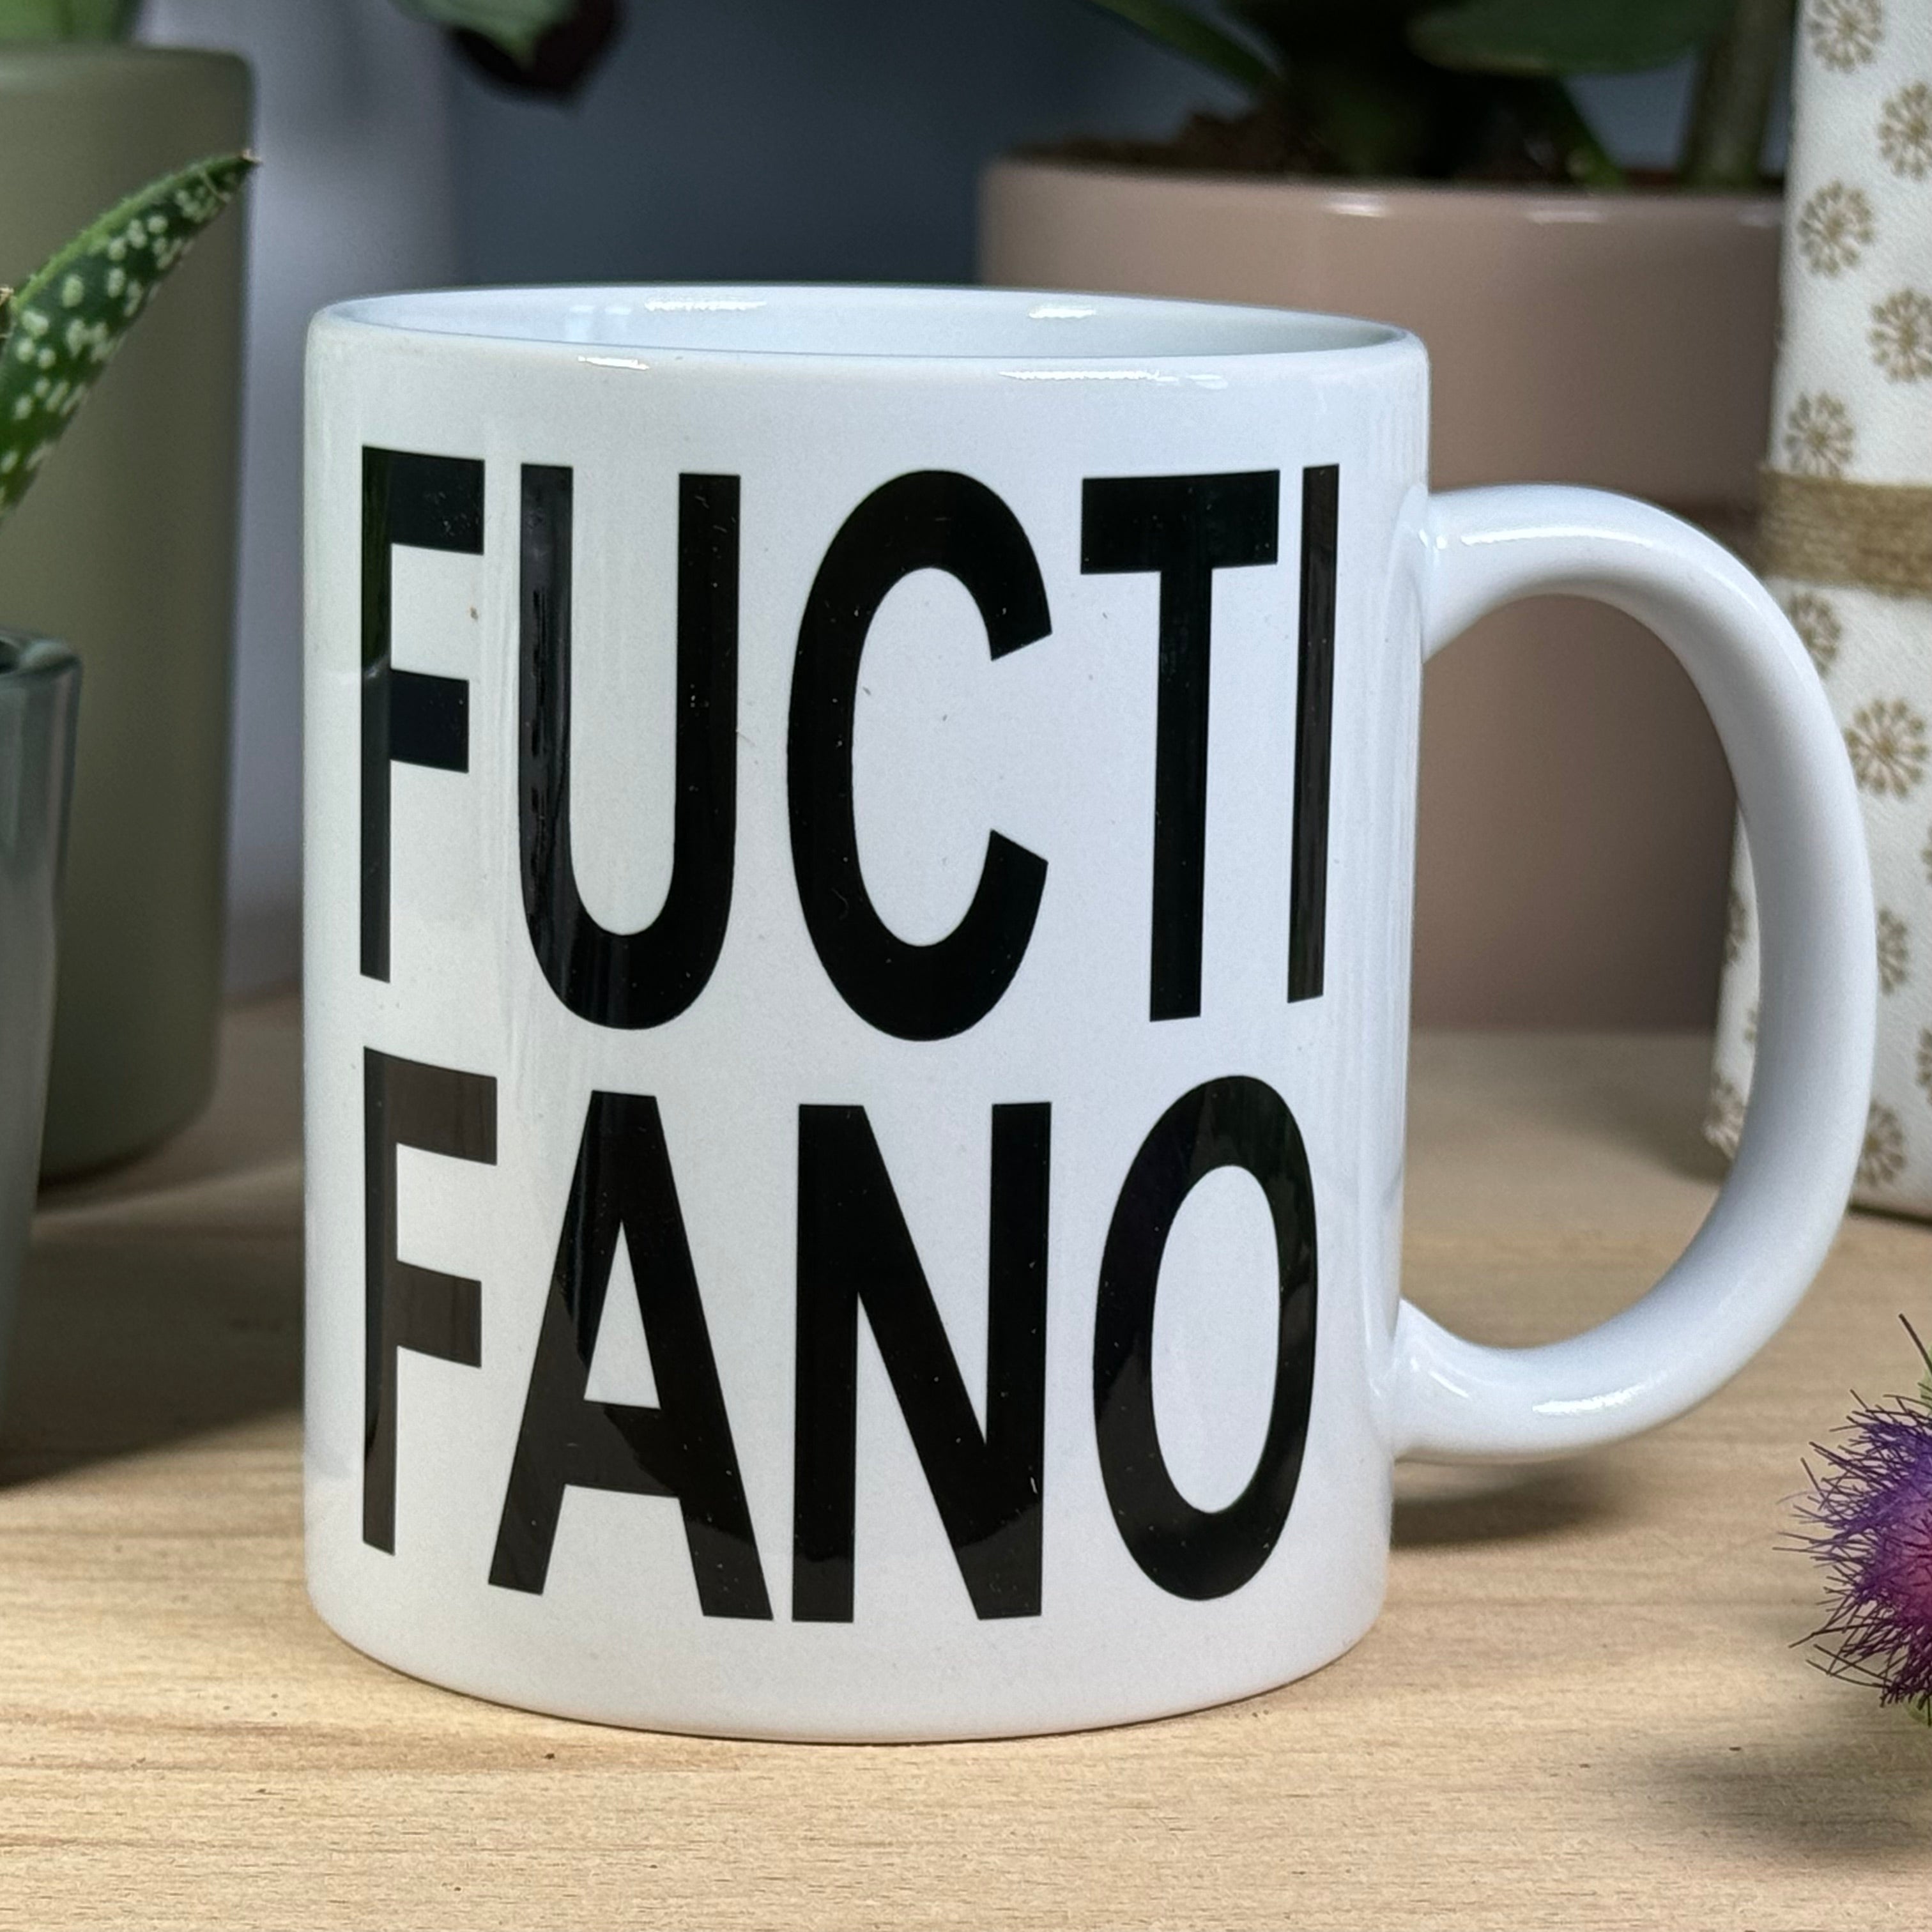 Ceramic mug - Scottish dialect - fuctifano